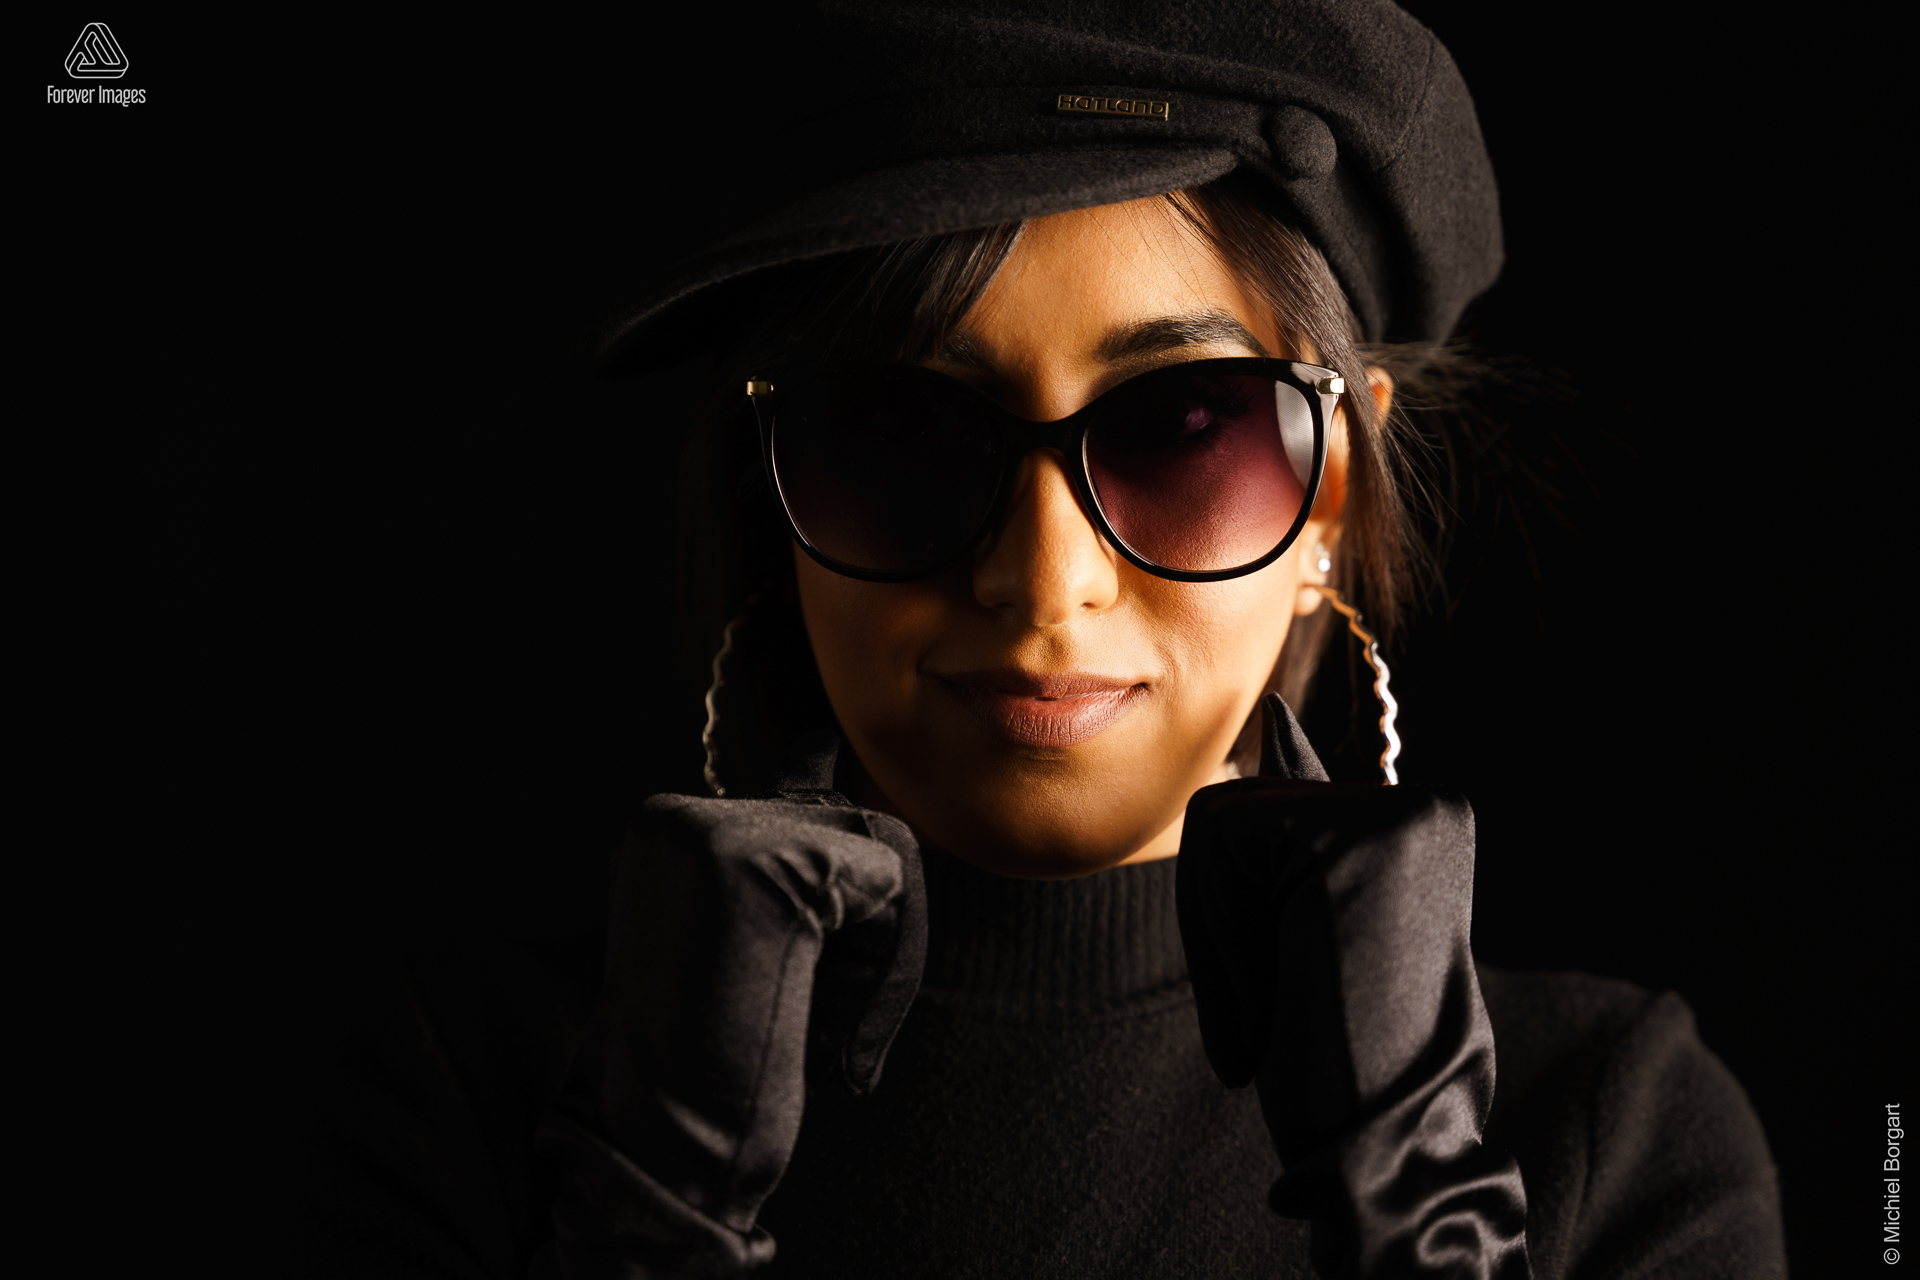 Portretfoto low key jonge dame met zwarte coltrui zonnebril baret en handschoenen | Arfa | Portretfotograaf Michiel Borgart - Forever Images.